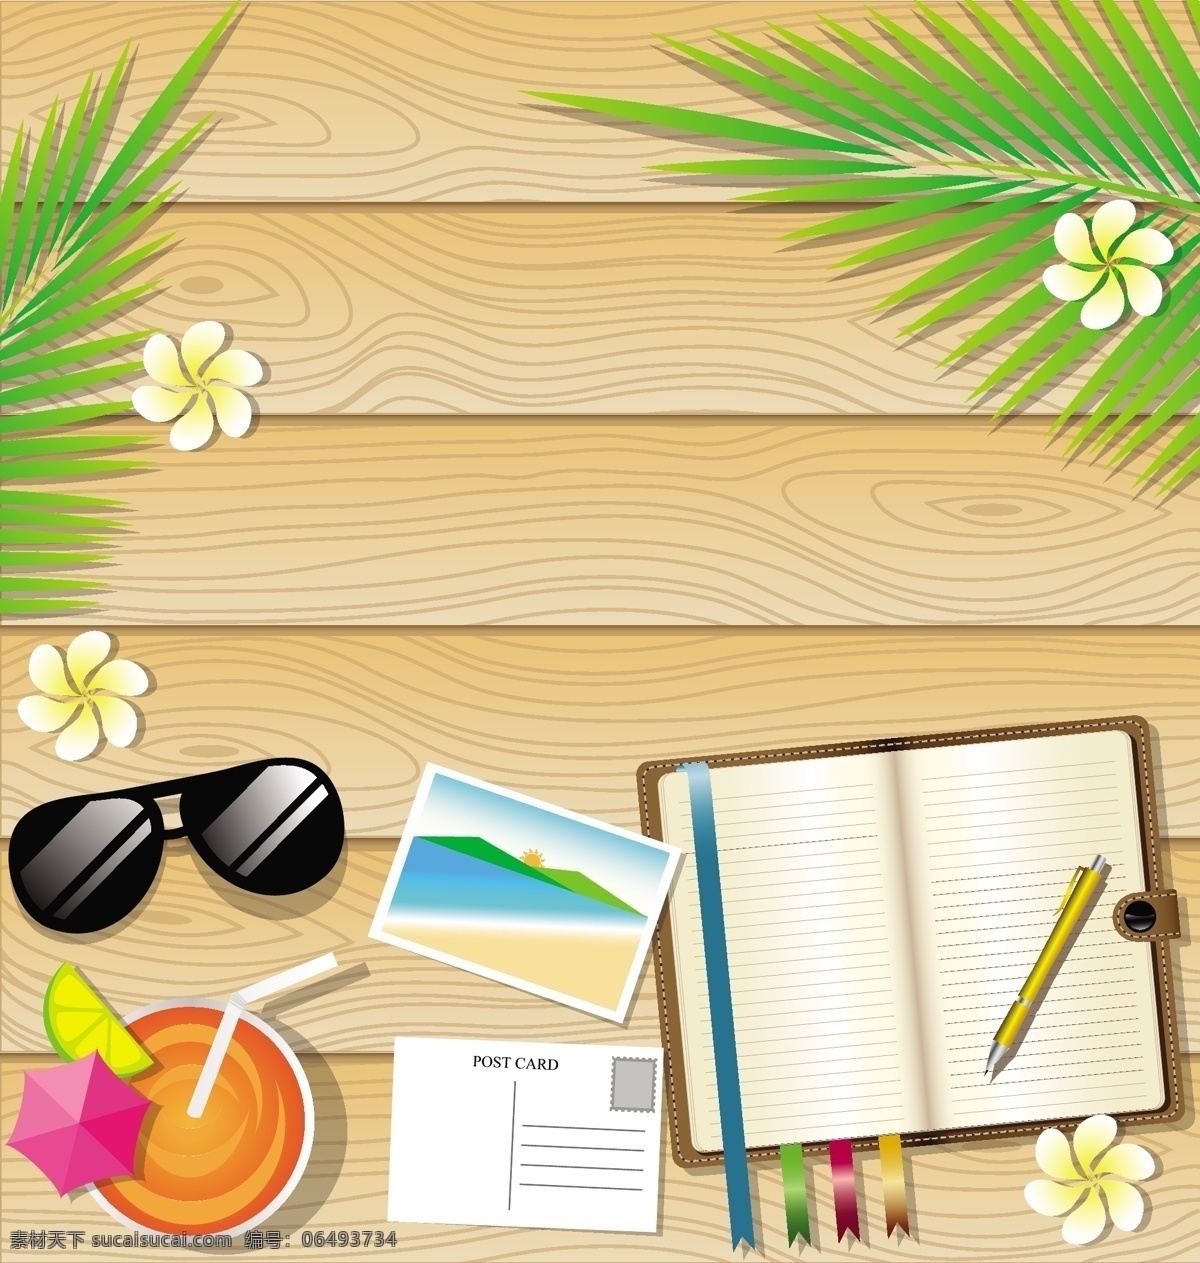 桌子 上 夏日 度假 沙滩 椰树 矢量 树枝 本子 复古 创意 涂鸦 英文 小清新 卡通 填充 插画 背景 海报 广告 包装 印刷